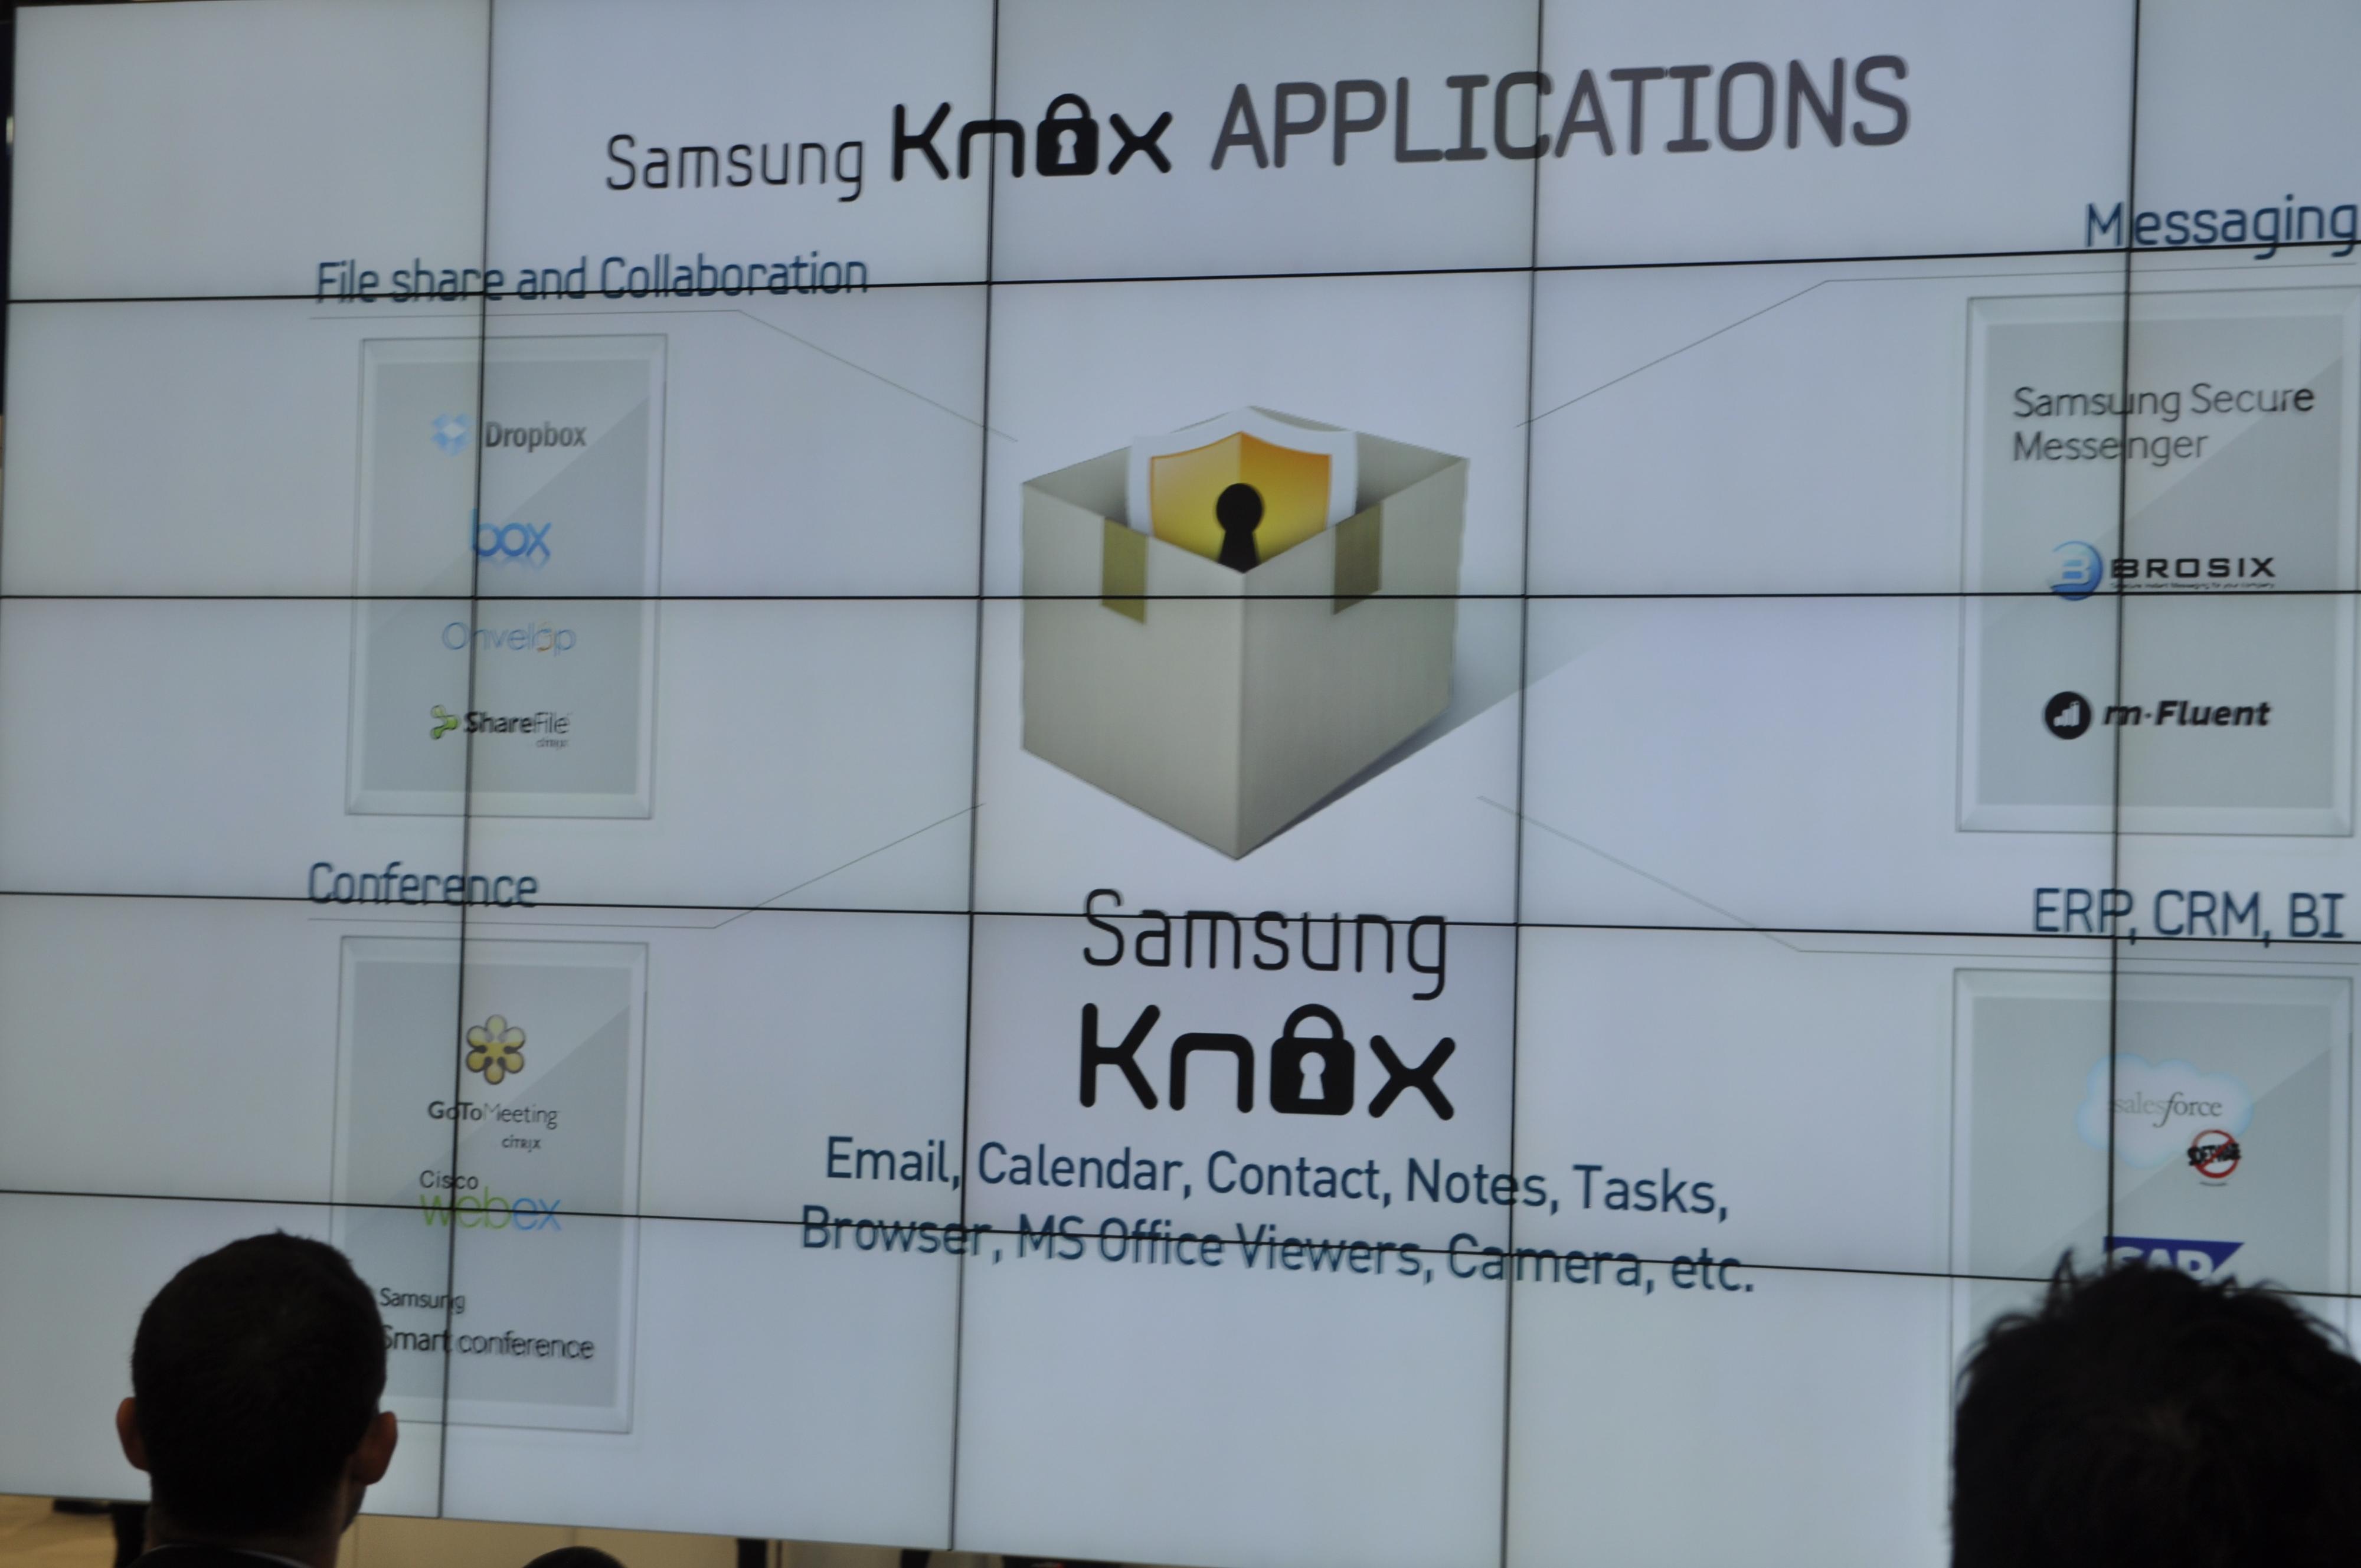 Samsung Knox er en tjeneste for bedrifter som krever ekstra sikkerhet. Her har blant annet amerikanske sikkerhetsmyndigheter bidratt til utviklingen. Knox vil bli tilgjengelig i Norge fra juni.Foto: Finn Jarle Kvalheim, Mobilen.no